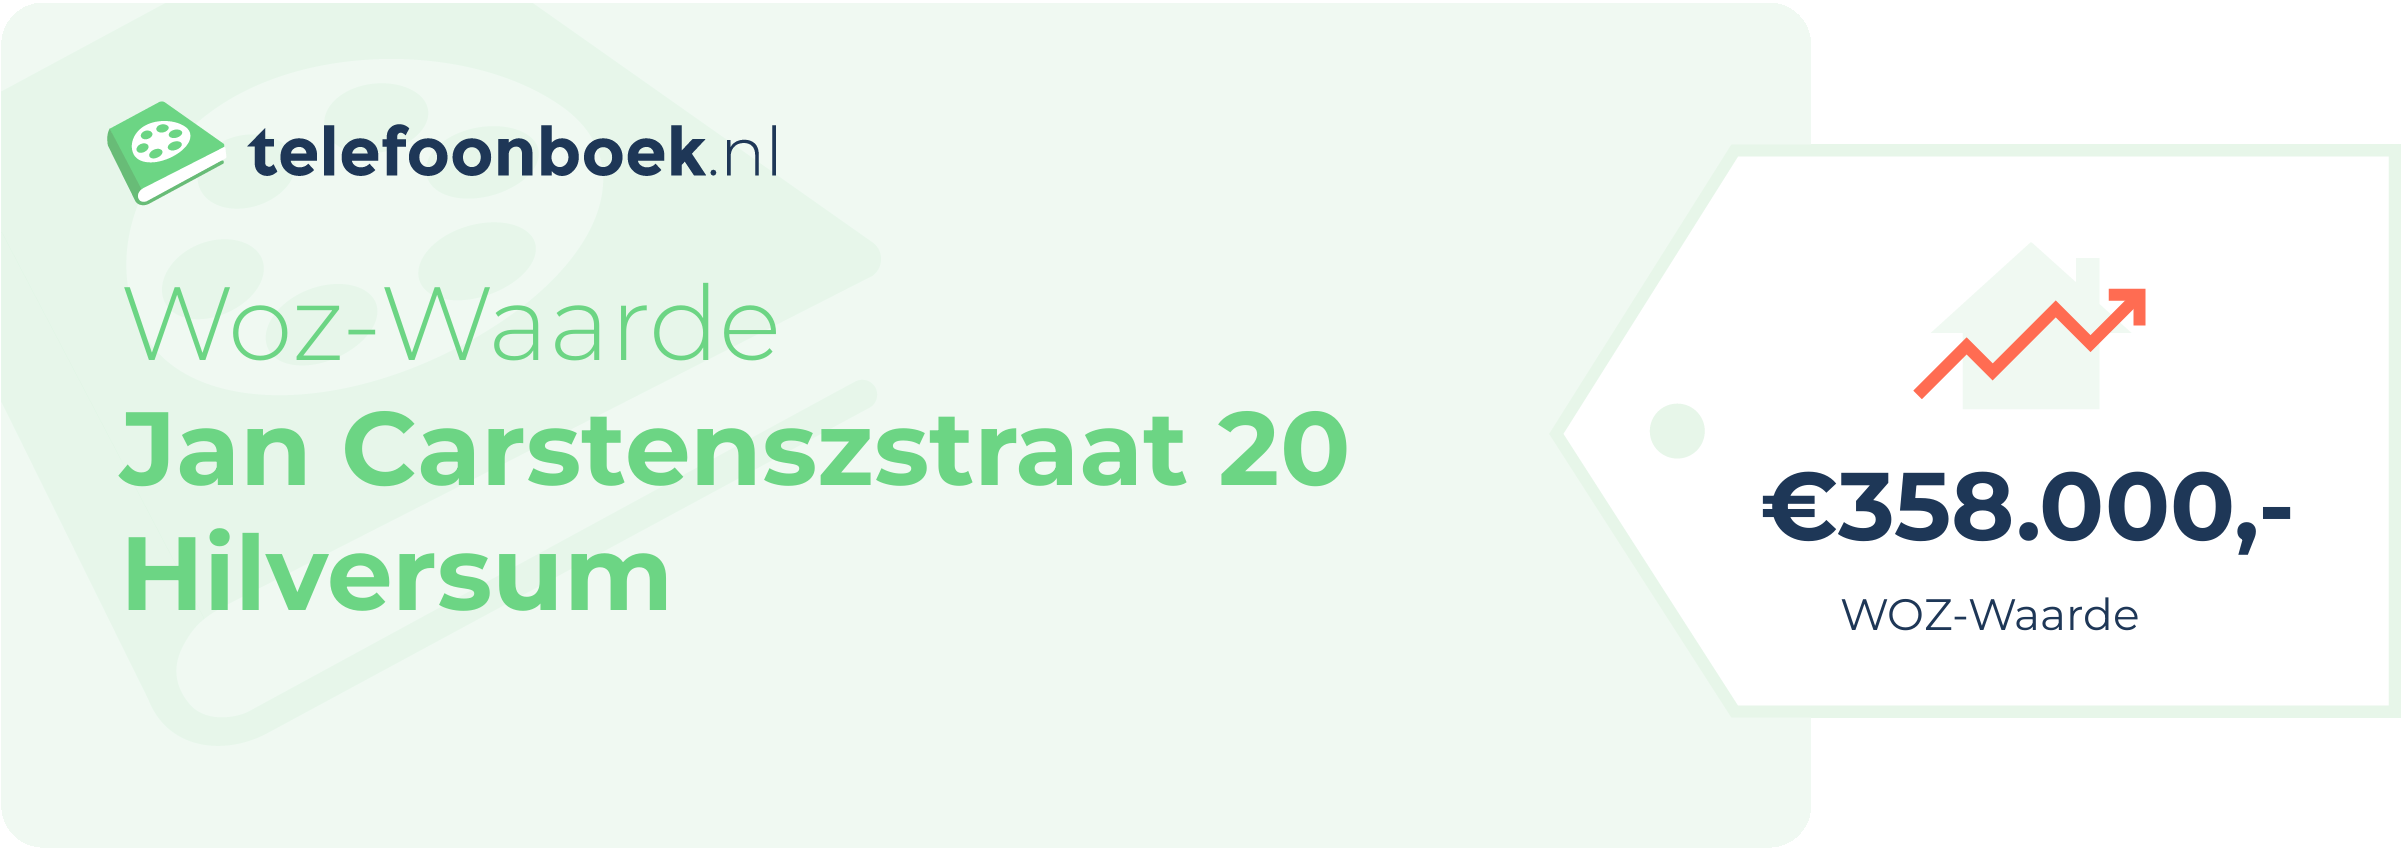 WOZ-waarde Jan Carstenszstraat 20 Hilversum